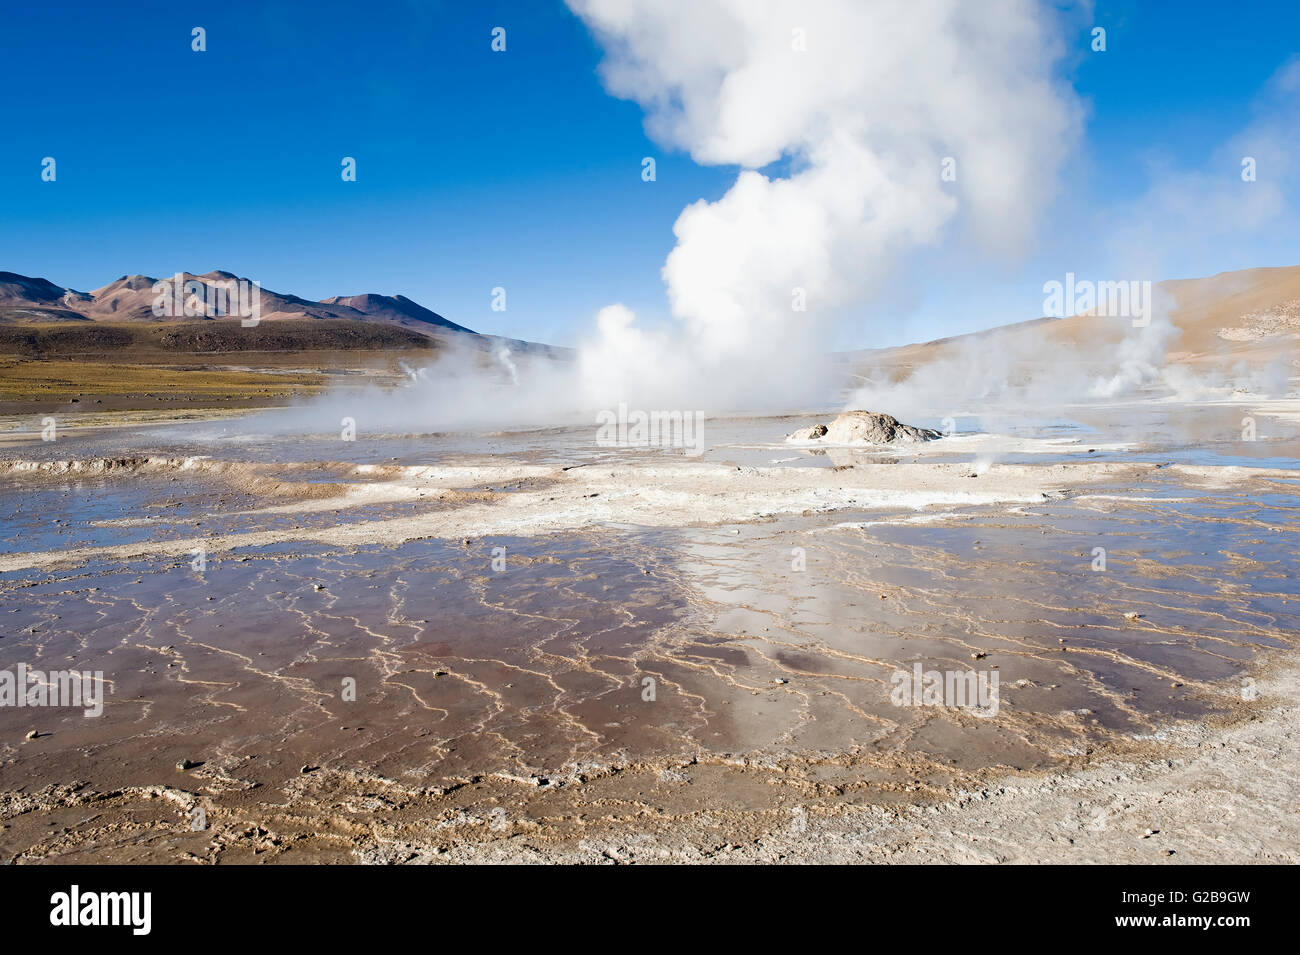 Geysers El Tatio, Atacama Desert, Antofagasto region, Chile Stock Photo